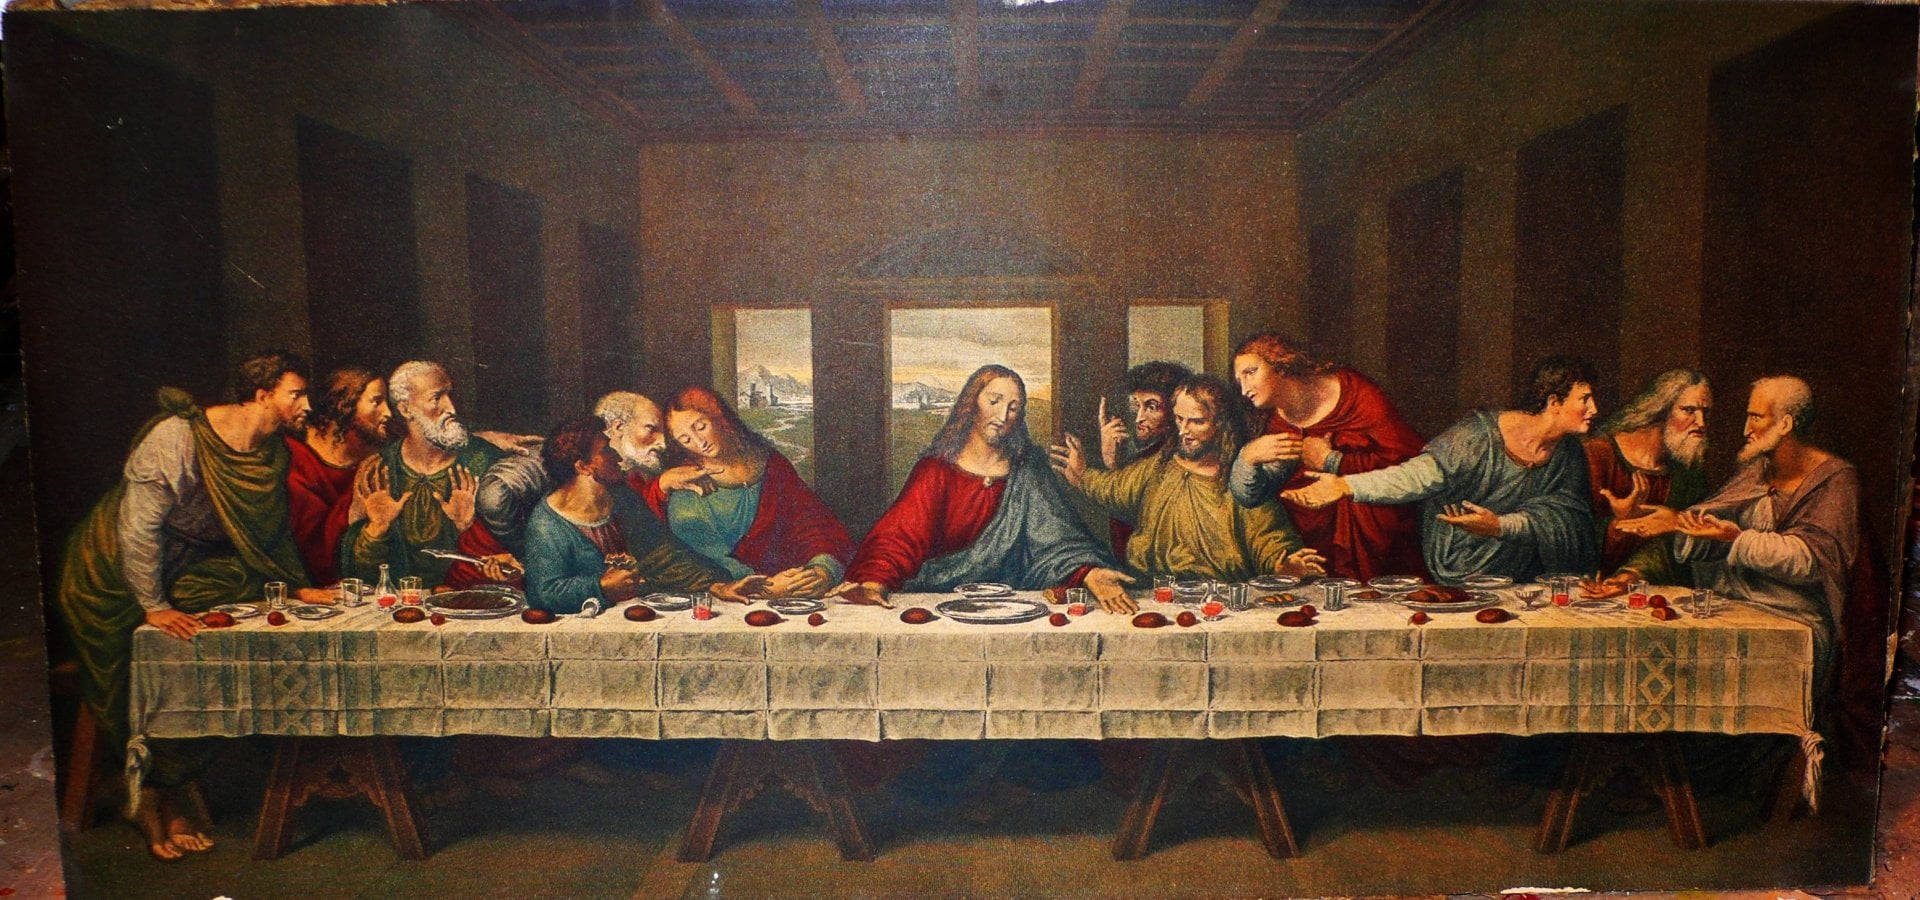 Jesus Christ Last Supper Background